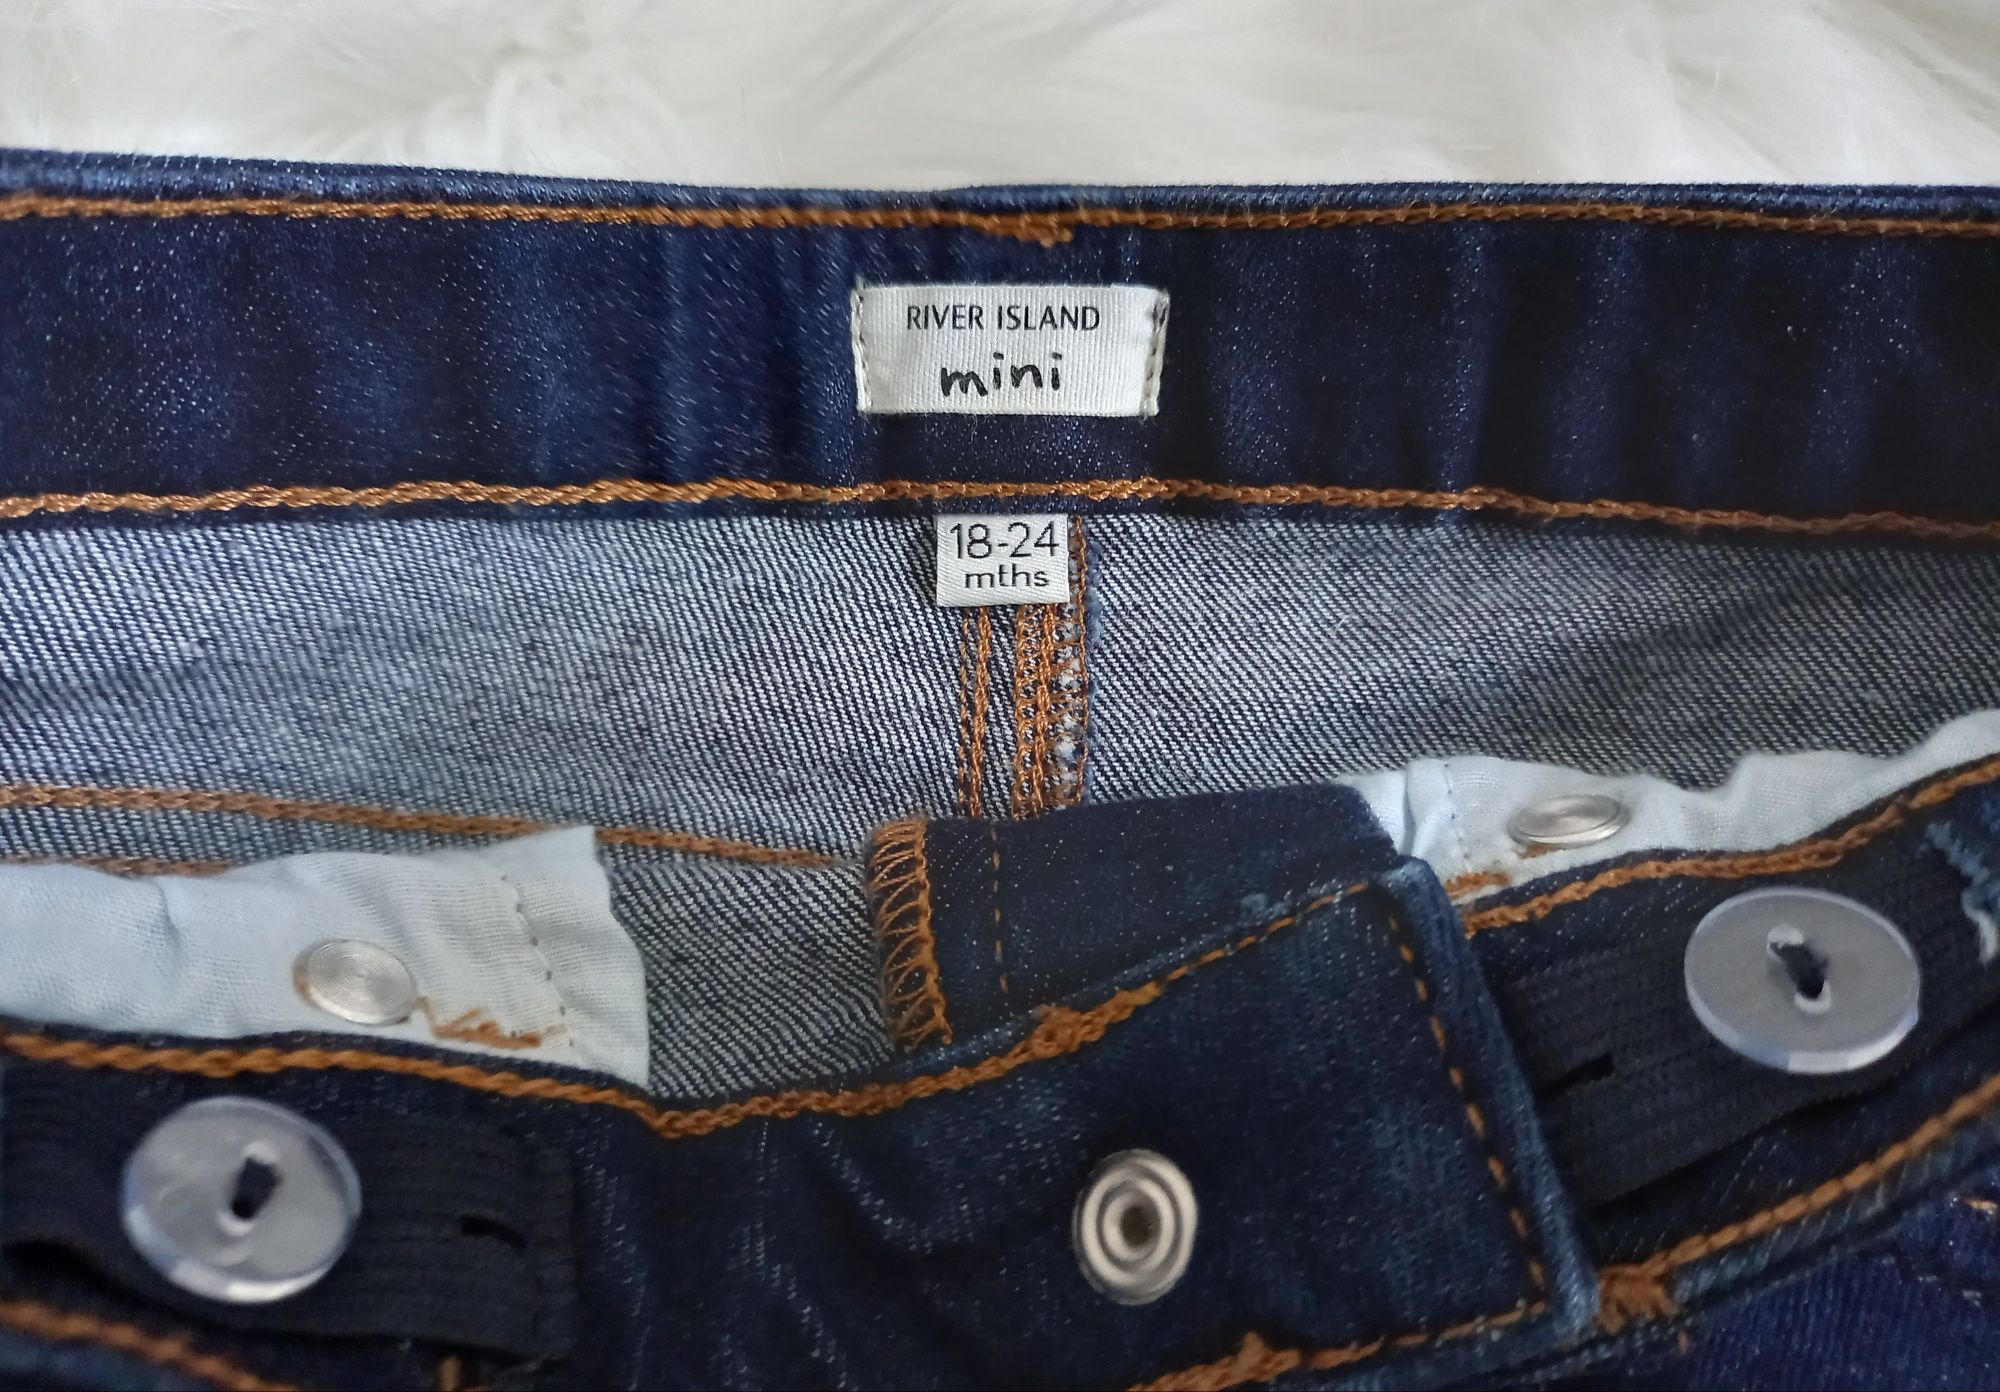 Spodnie jeansy nowe rozmiar 86/92